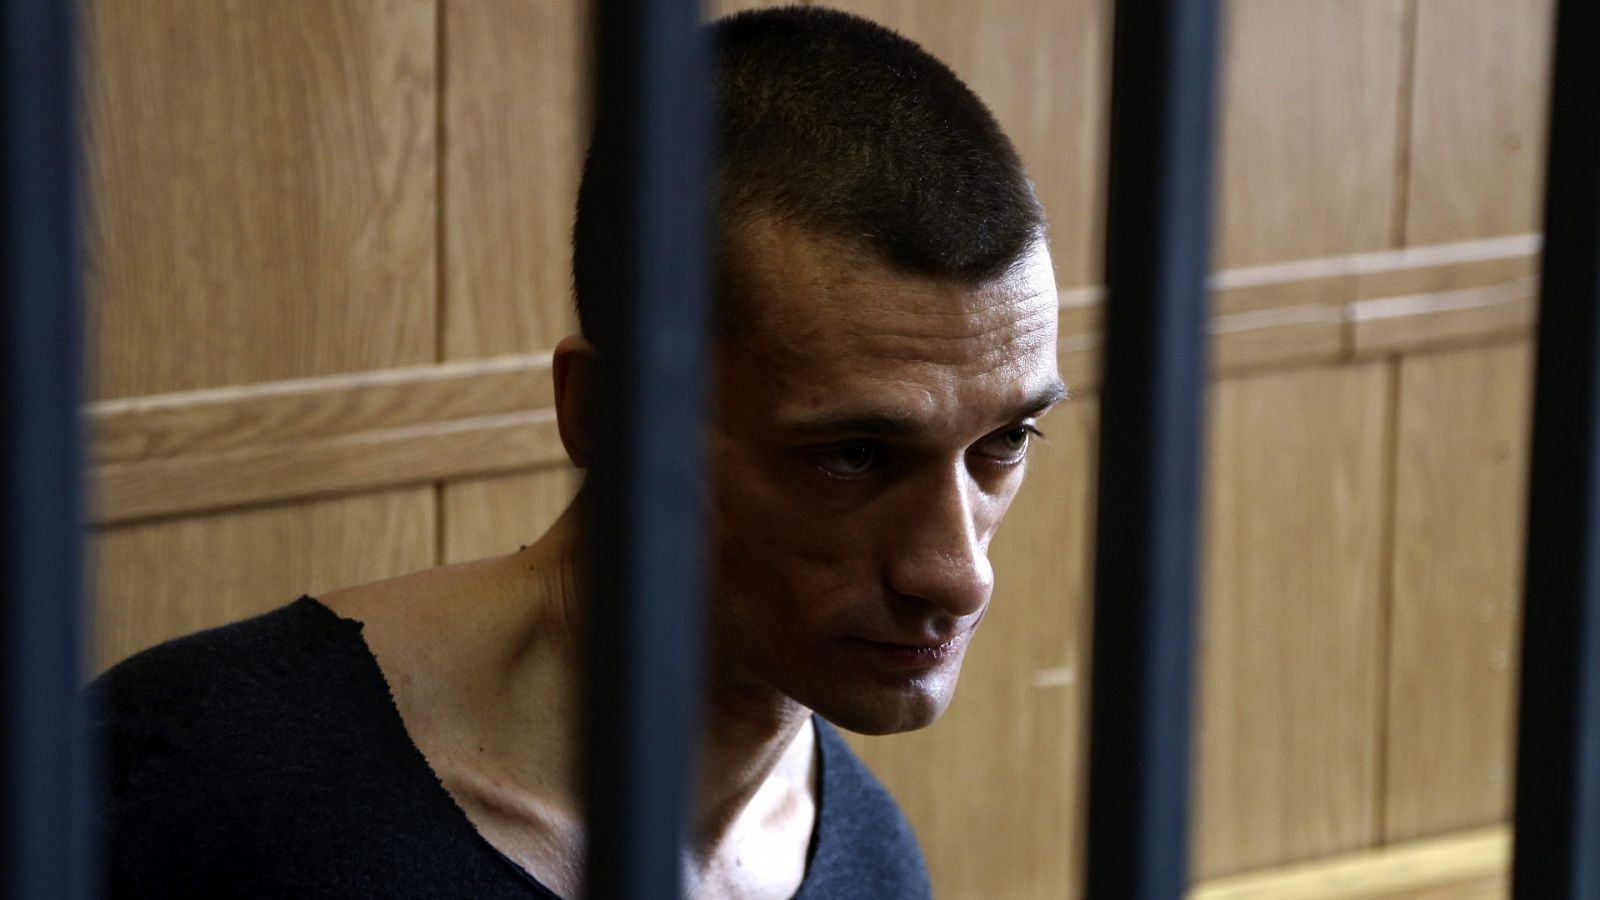 El artista ruso Petr Pavlensky ha sido perseguido por sus manifestaciones en contra de la represión en el país